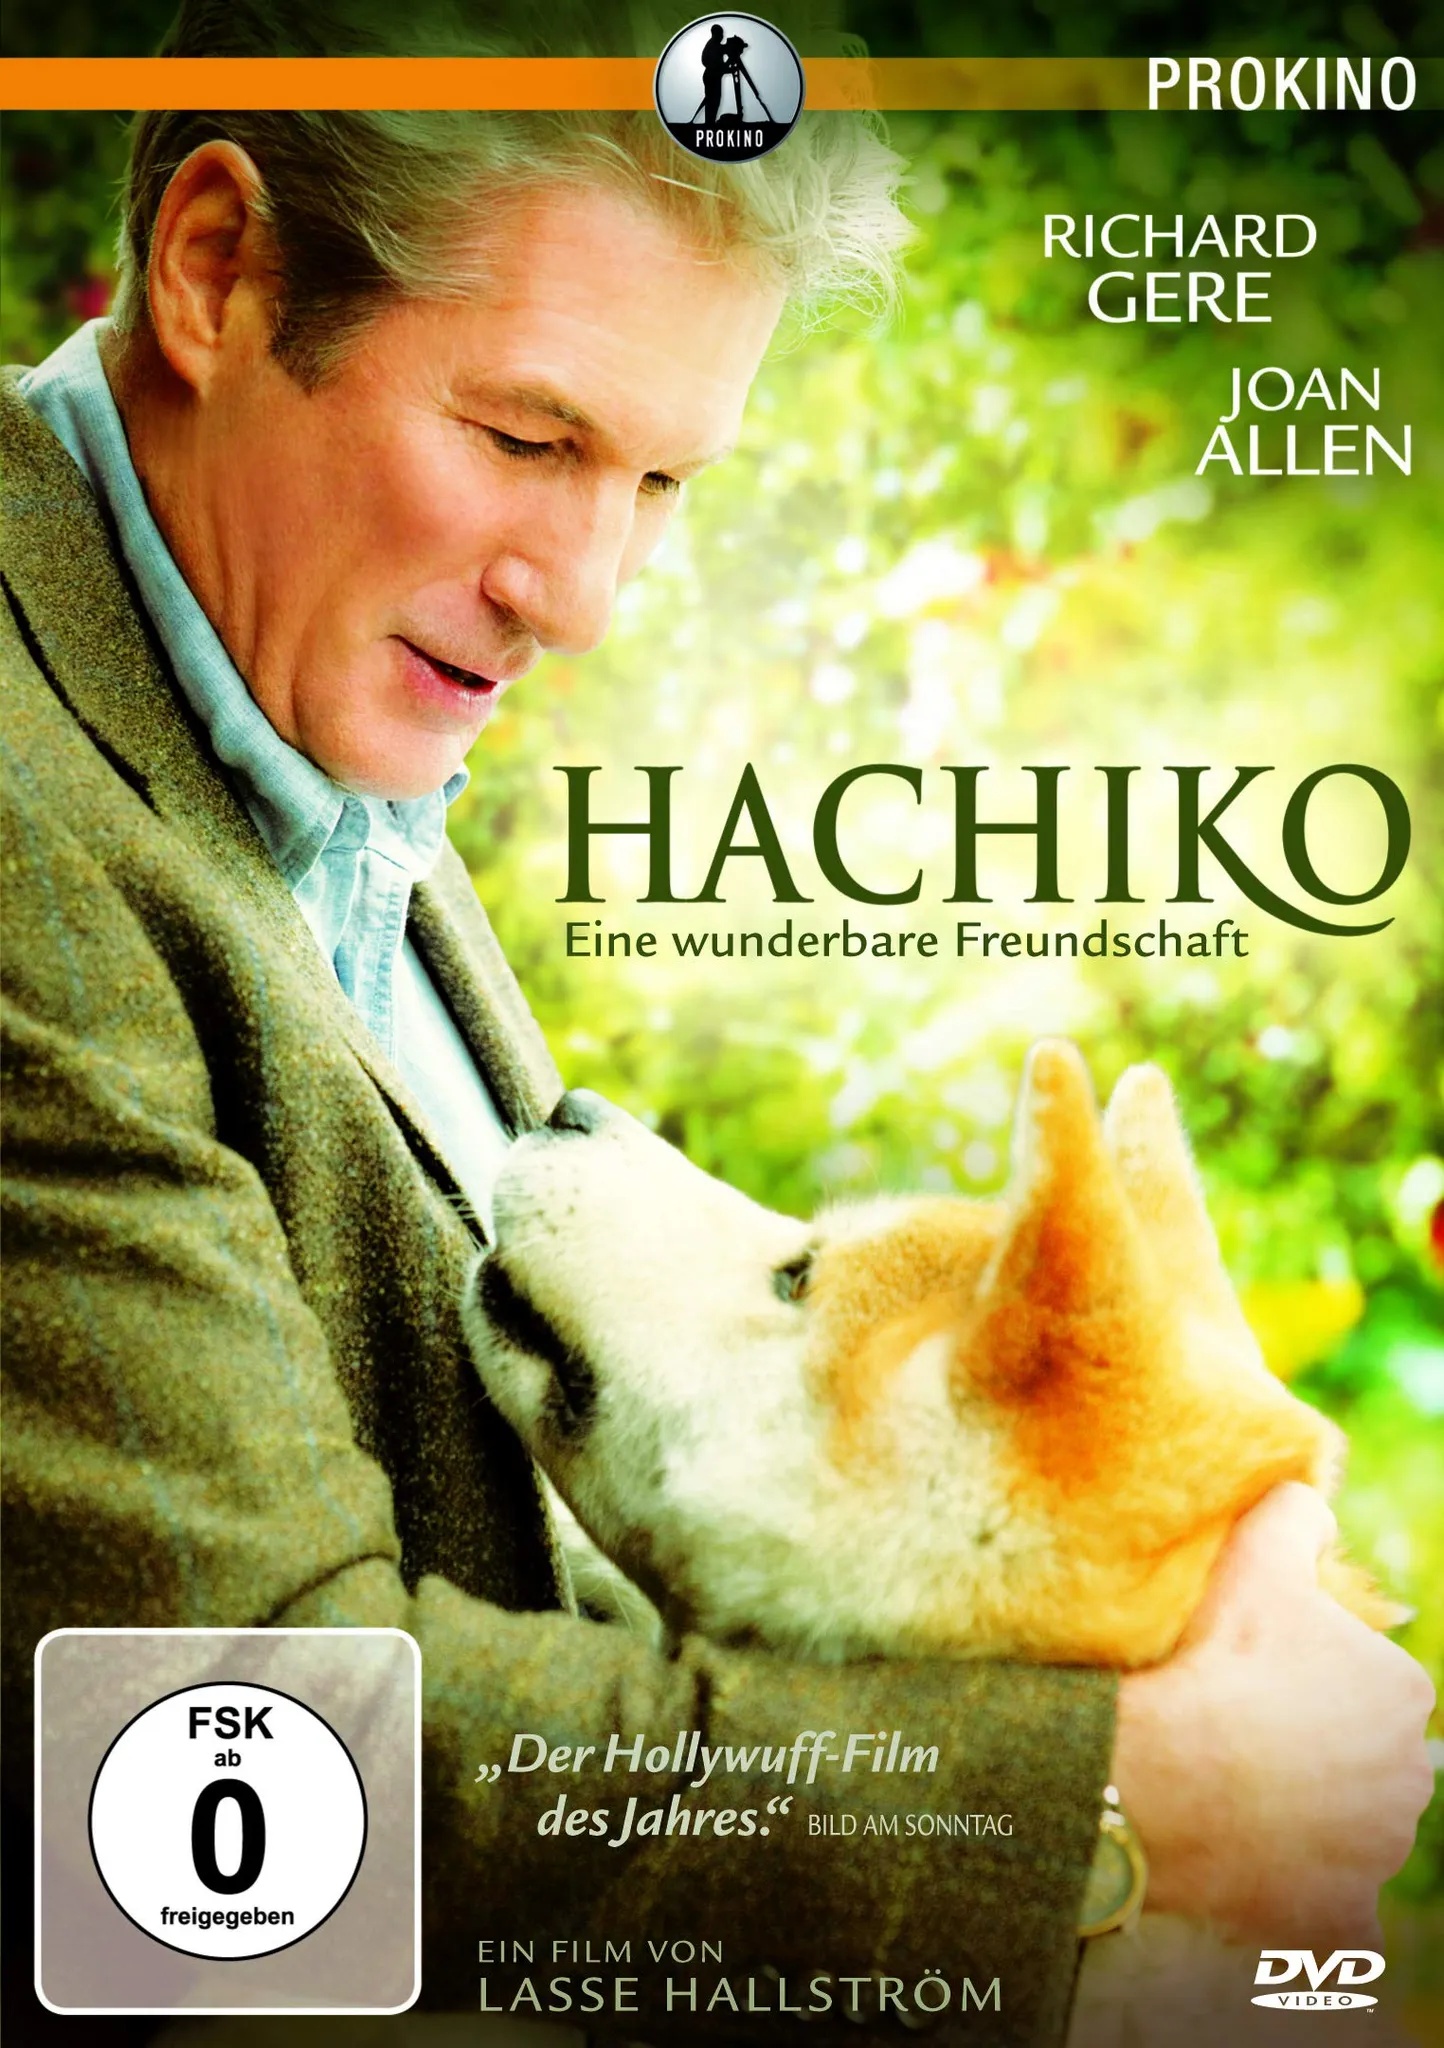 Hachiko - Eine wunderbare Freundschaft (Neu differenzbesteuert)